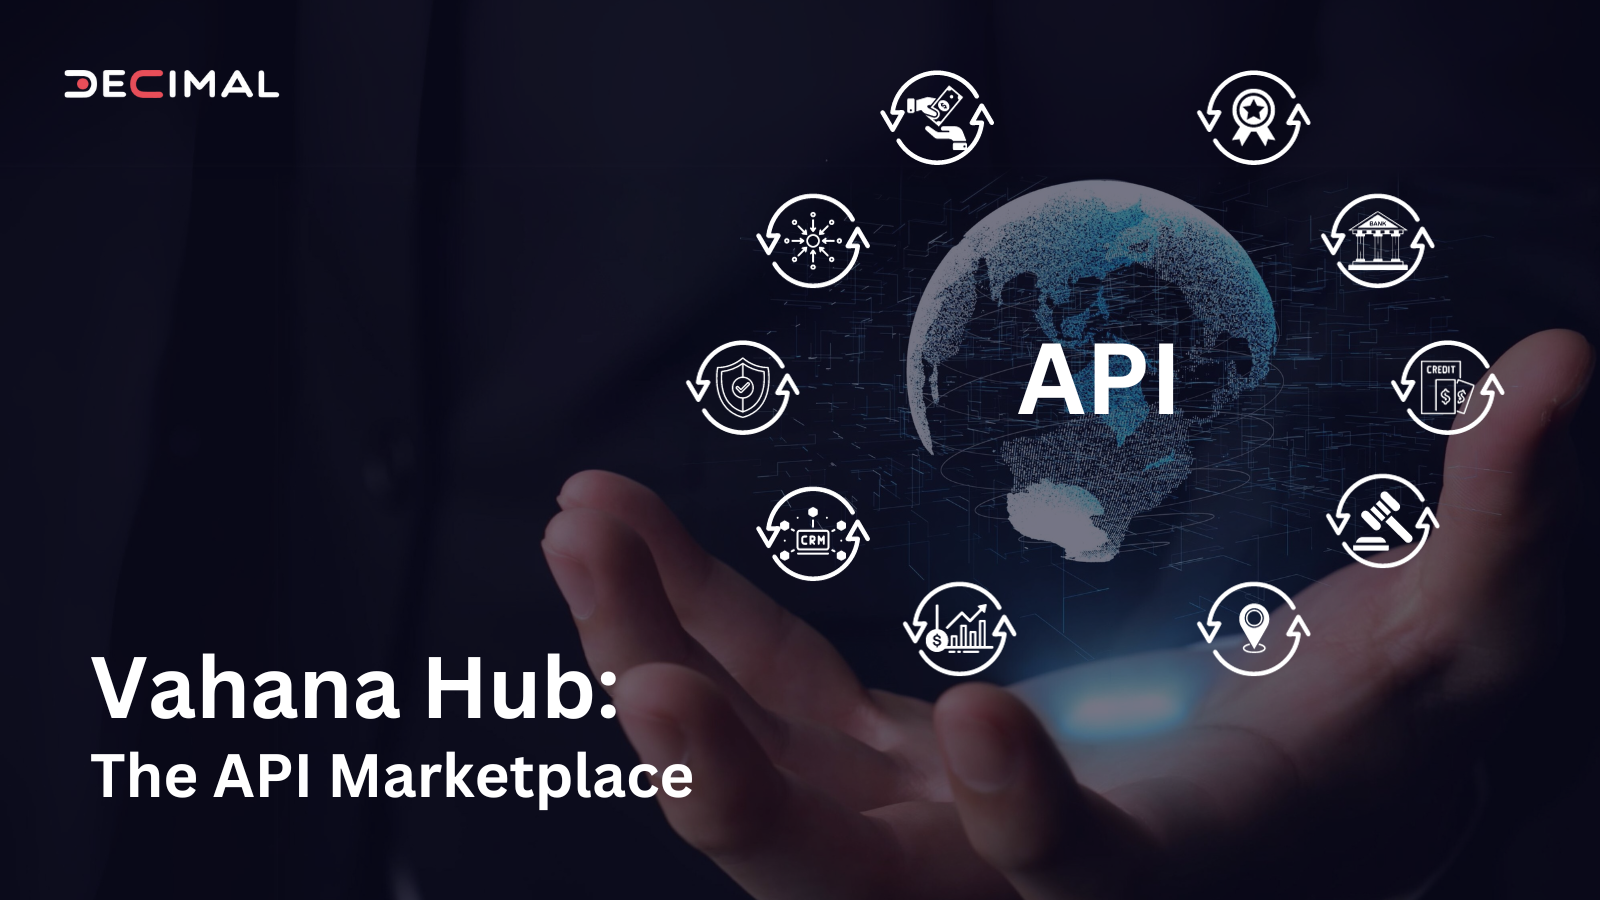 Vahana HUB: The API Marketplace